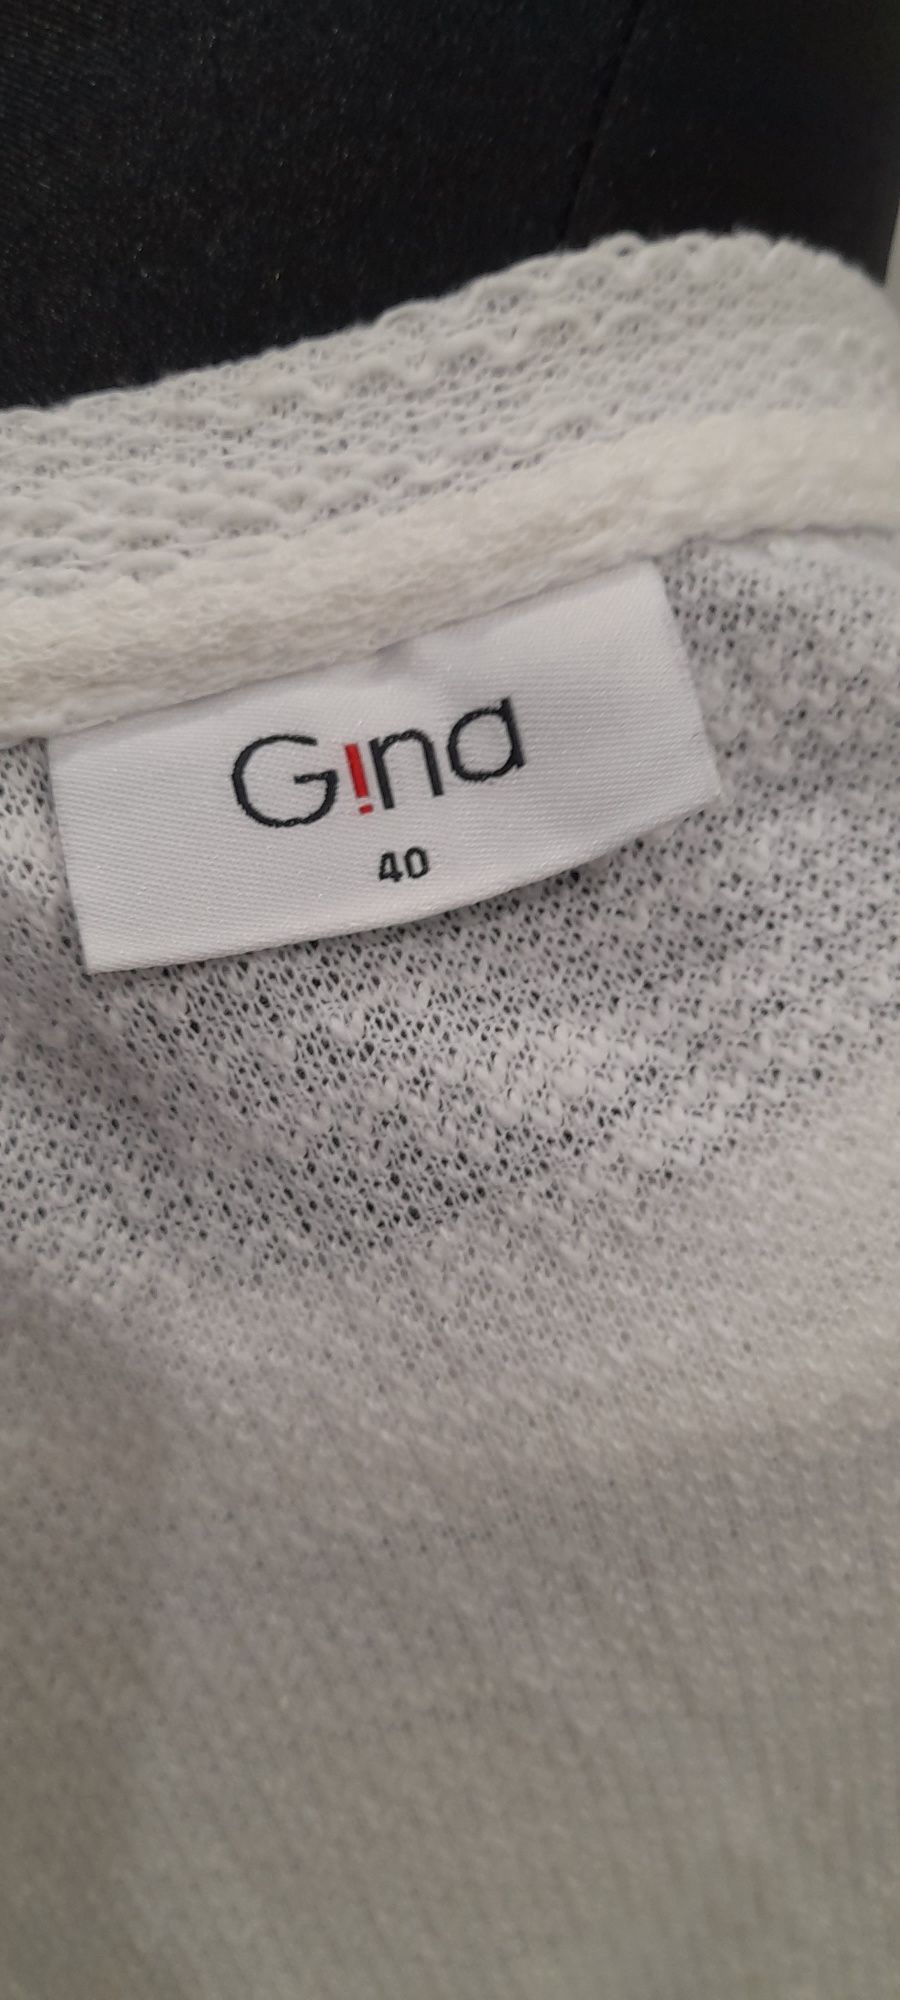 Cienki Biały sweter bluzka Gina 40